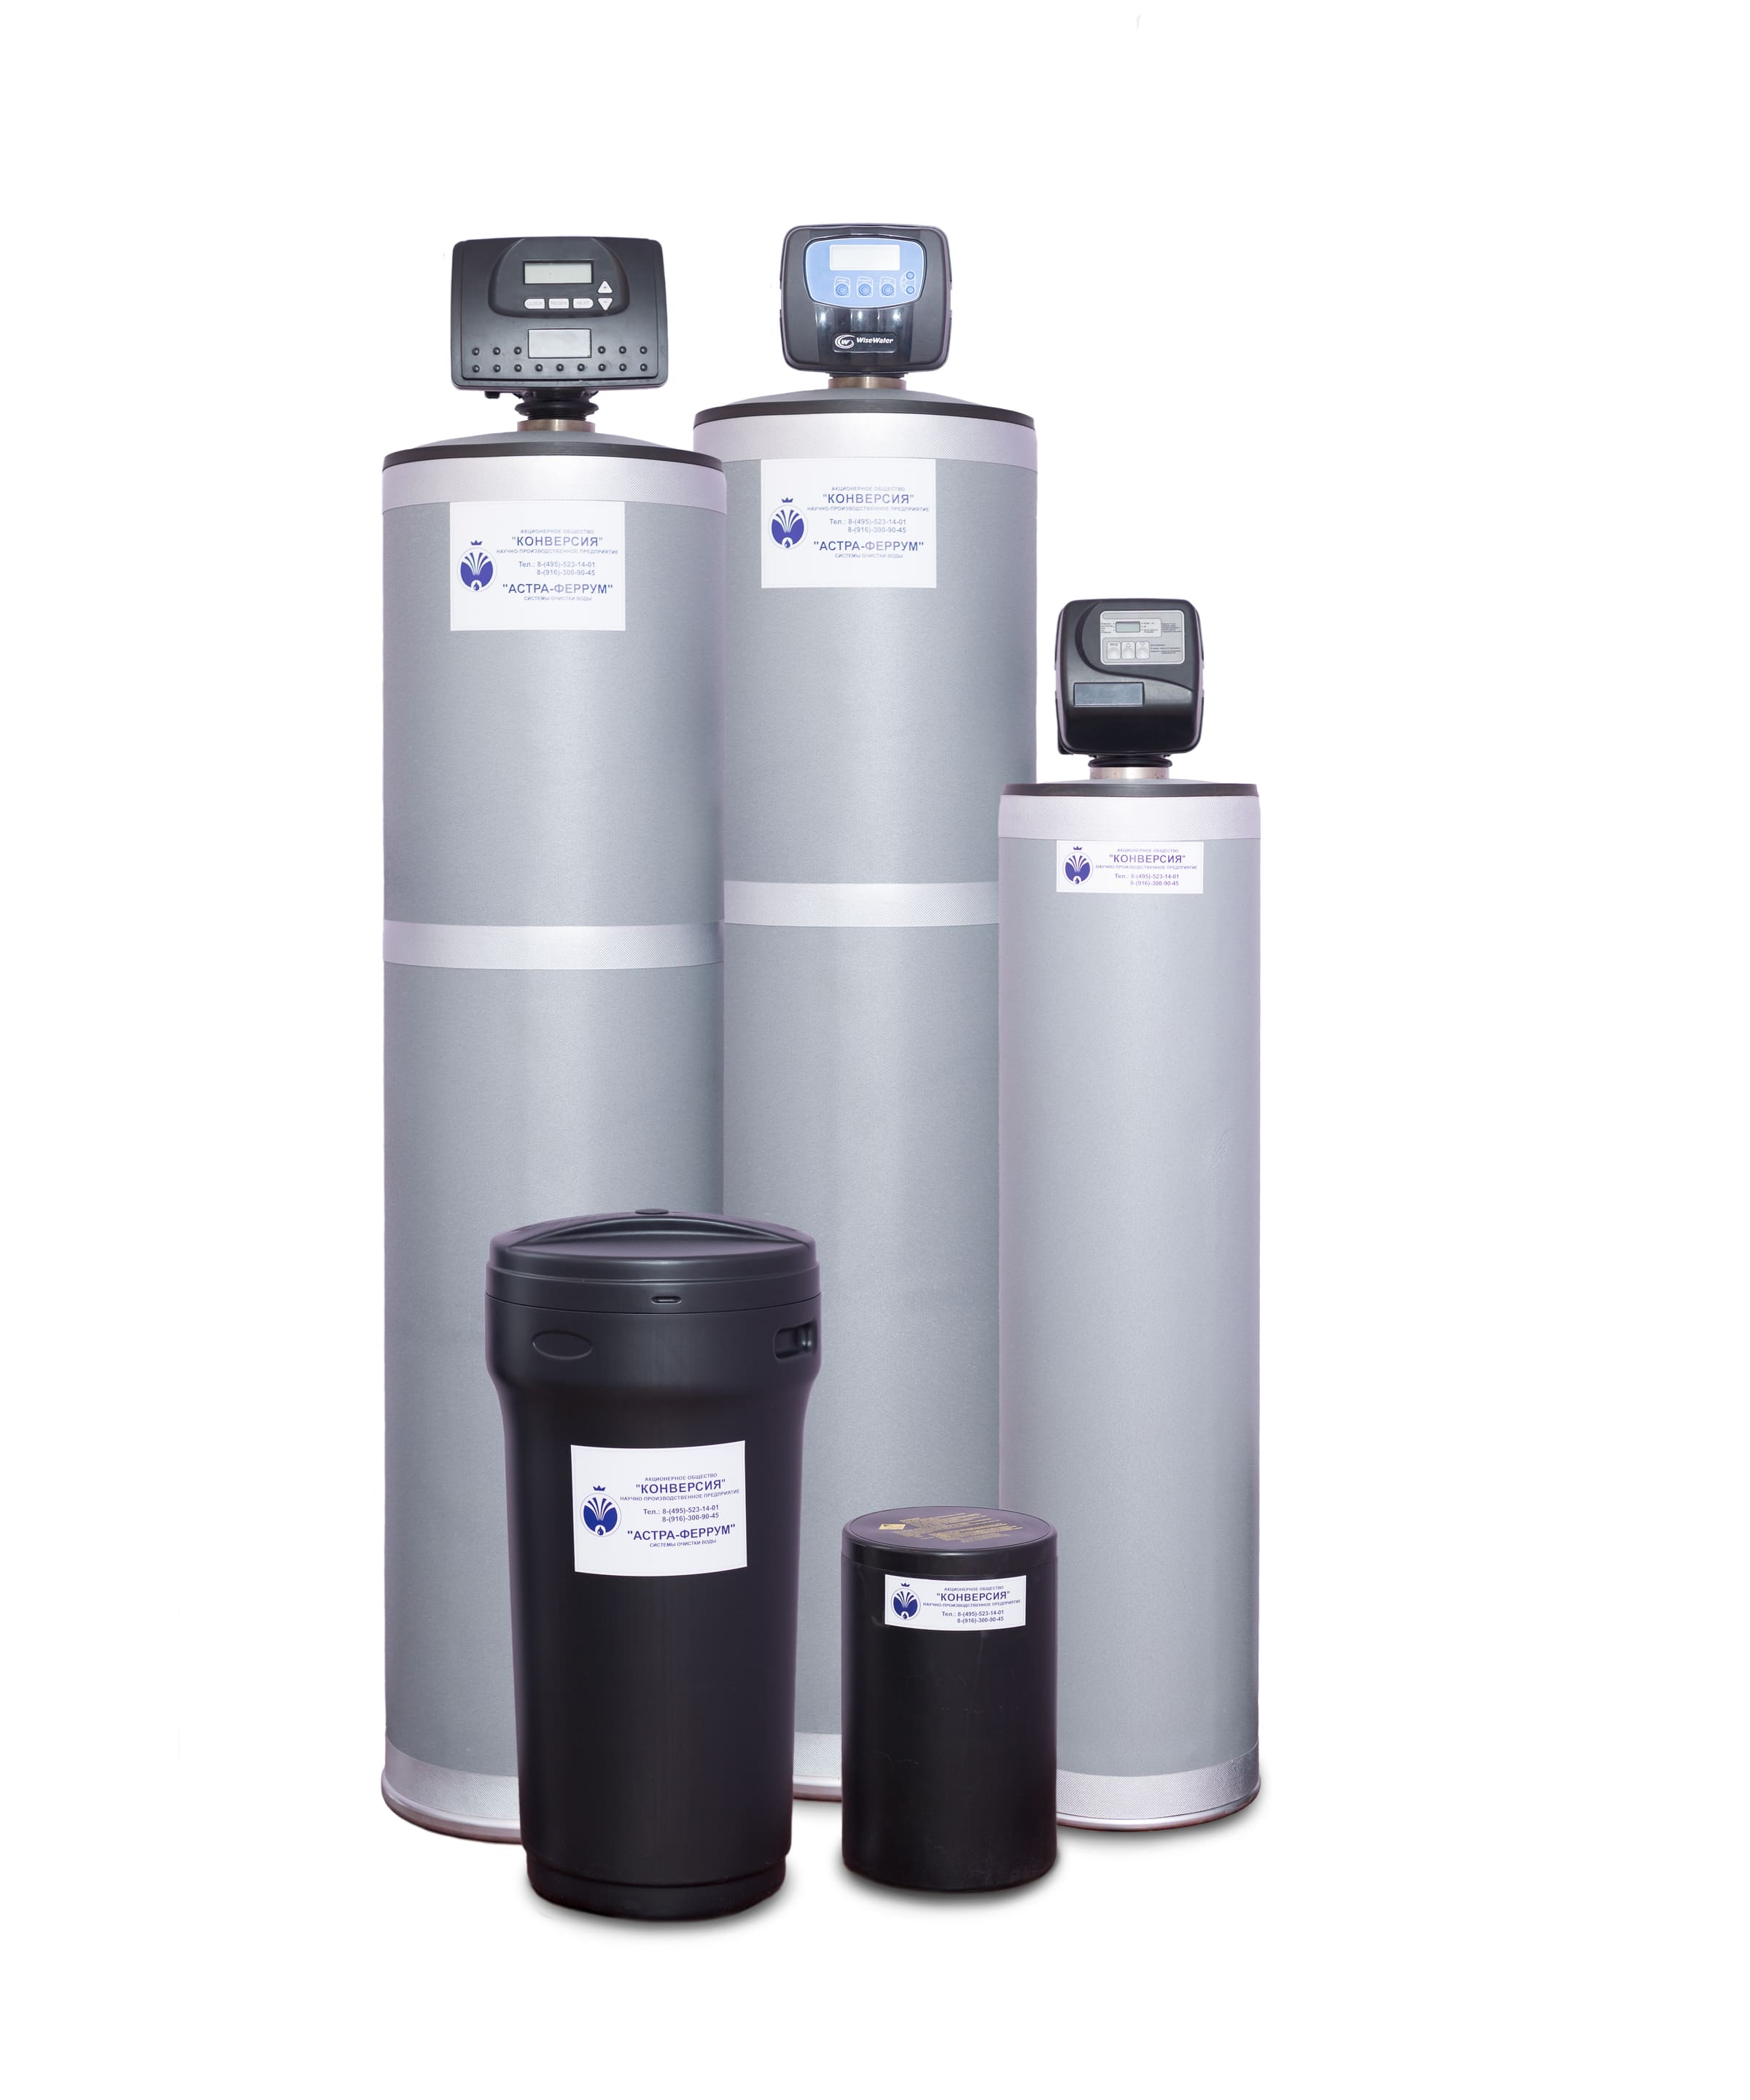 Методы фильтрации воды в системах водоподготовки